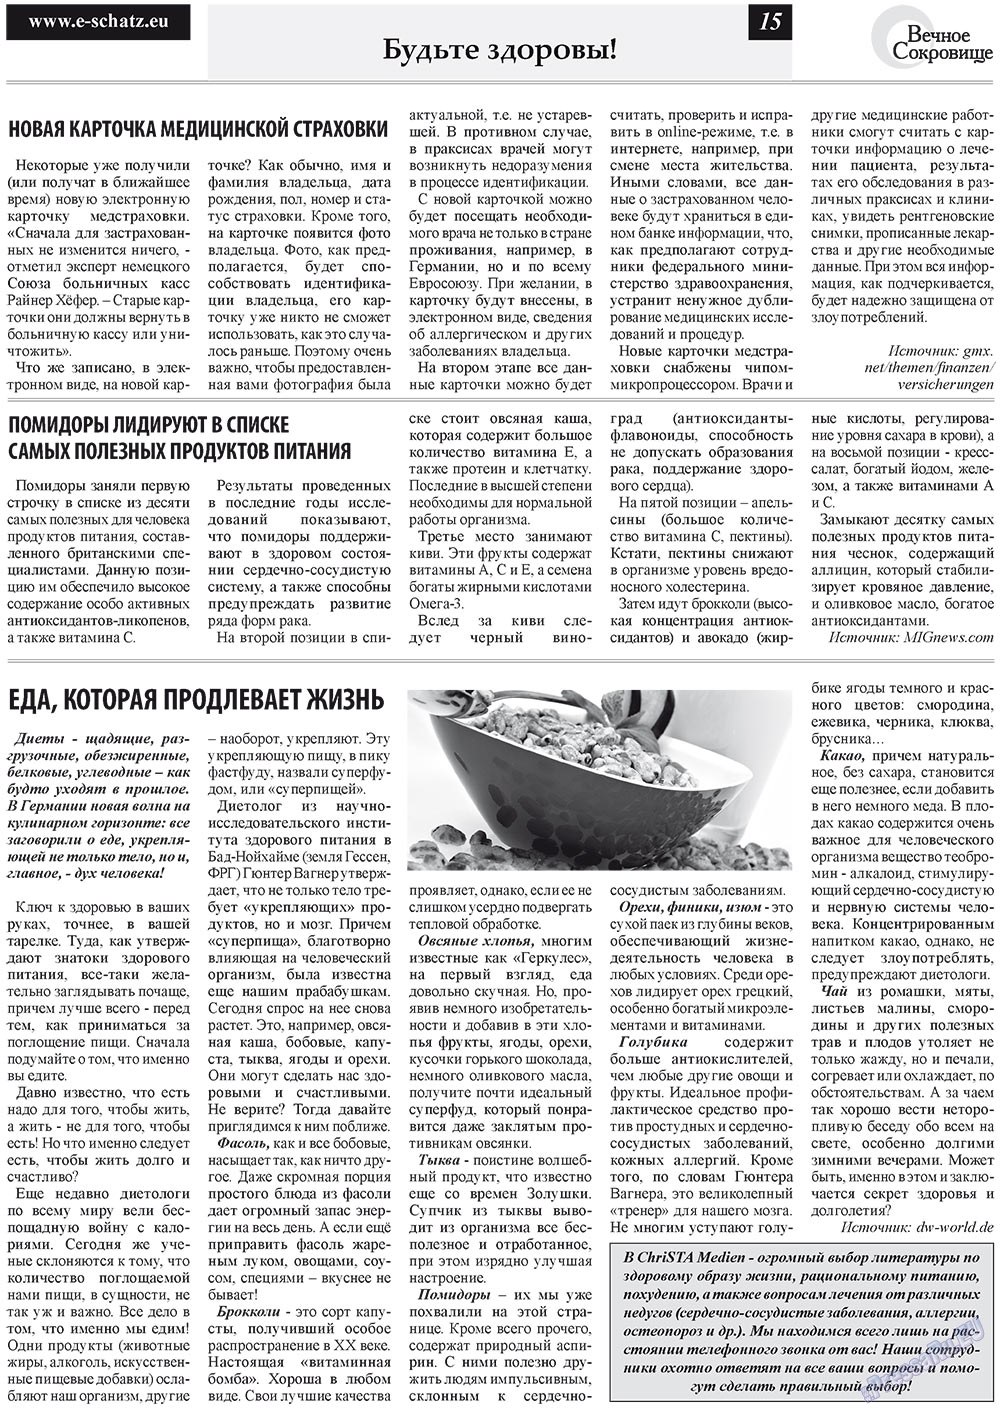 Вечное сокровище (газета). 2011 год, номер 6, стр. 15